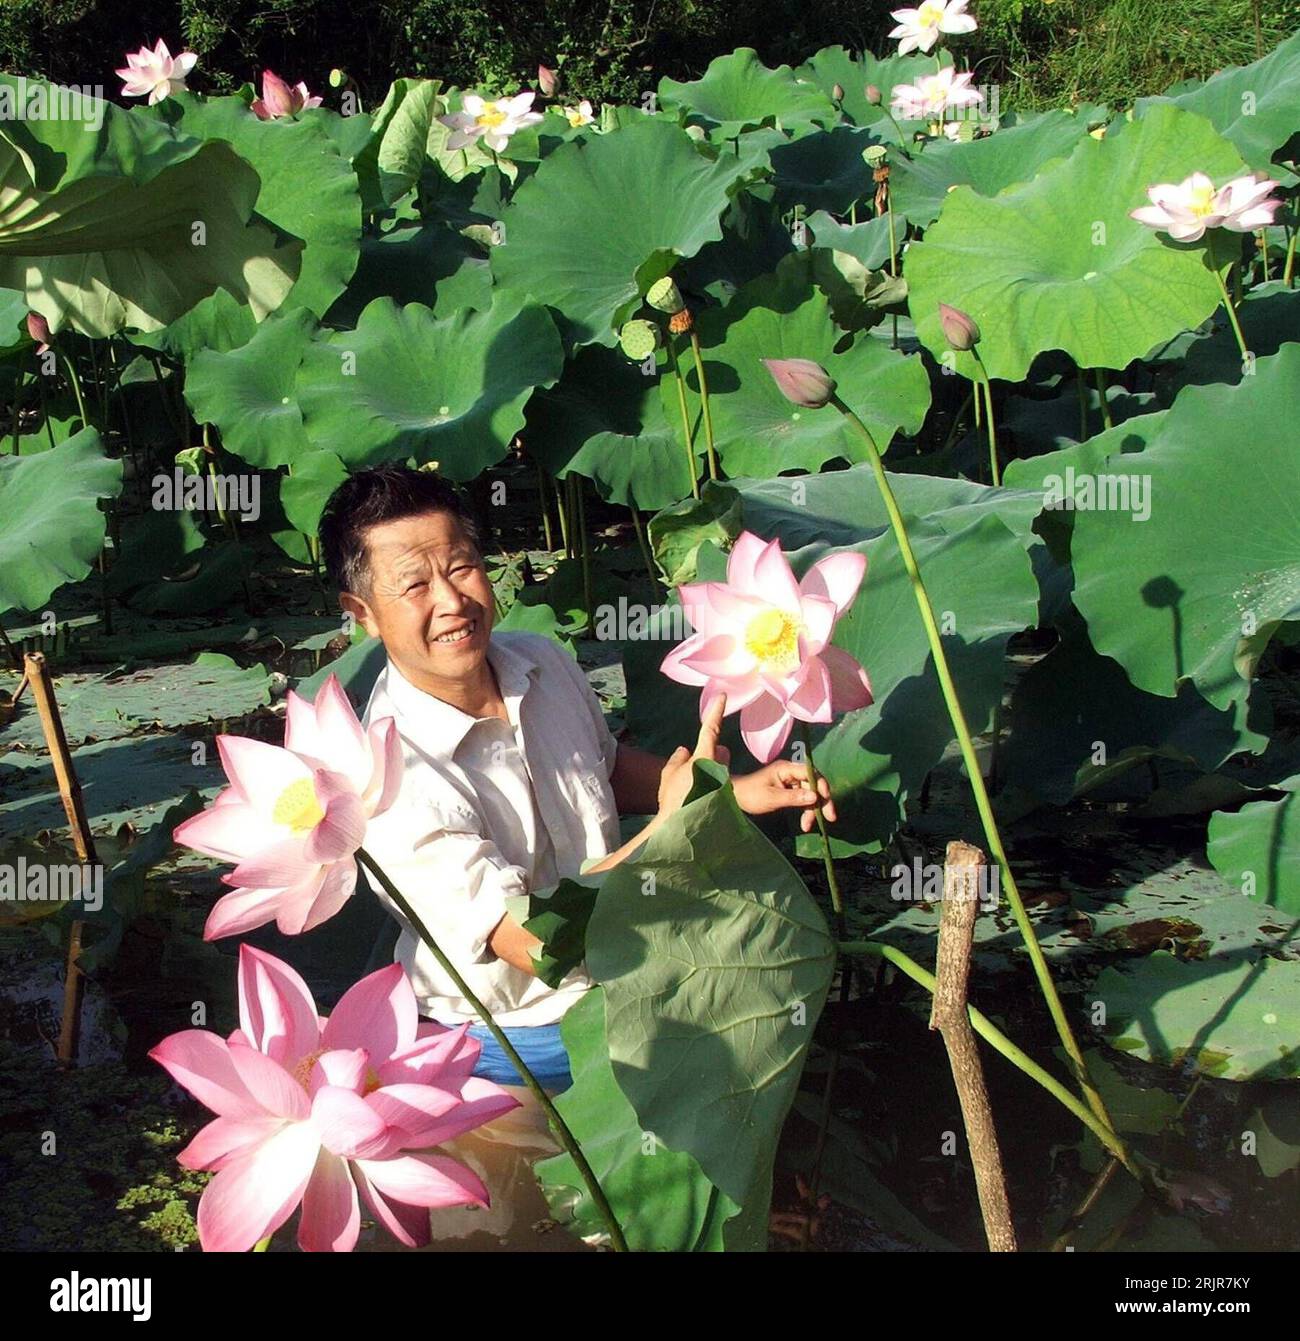 Bildnummer: 51322759  Datum: 05.07.2006  Copyright: imago/Xinhua Landwirt Tang Lesheng zwischen blühenden Lotusblumen, die aus Samen gewachsen sind, welche auf einem Satelliten mitgeflogen sind - Shaoyang, Provinz Hunan  PUBLICATIONxNOTxINxCHN, Personen , Pflanzen , optimistisch; 2006, Shaoyang, Hunan, Mann, Männer, lächelt, Bauer, Bauern, Blume, Blumen, Lotus, Lotos, Lotusblume, Lotusblumen, Lotosblume, Lotosblumen, blüht, blühend, blühen,; , quer, Kbdig, Einzelbild, Landwirtschaft, Wirtschaft, China,  , Stock Photo